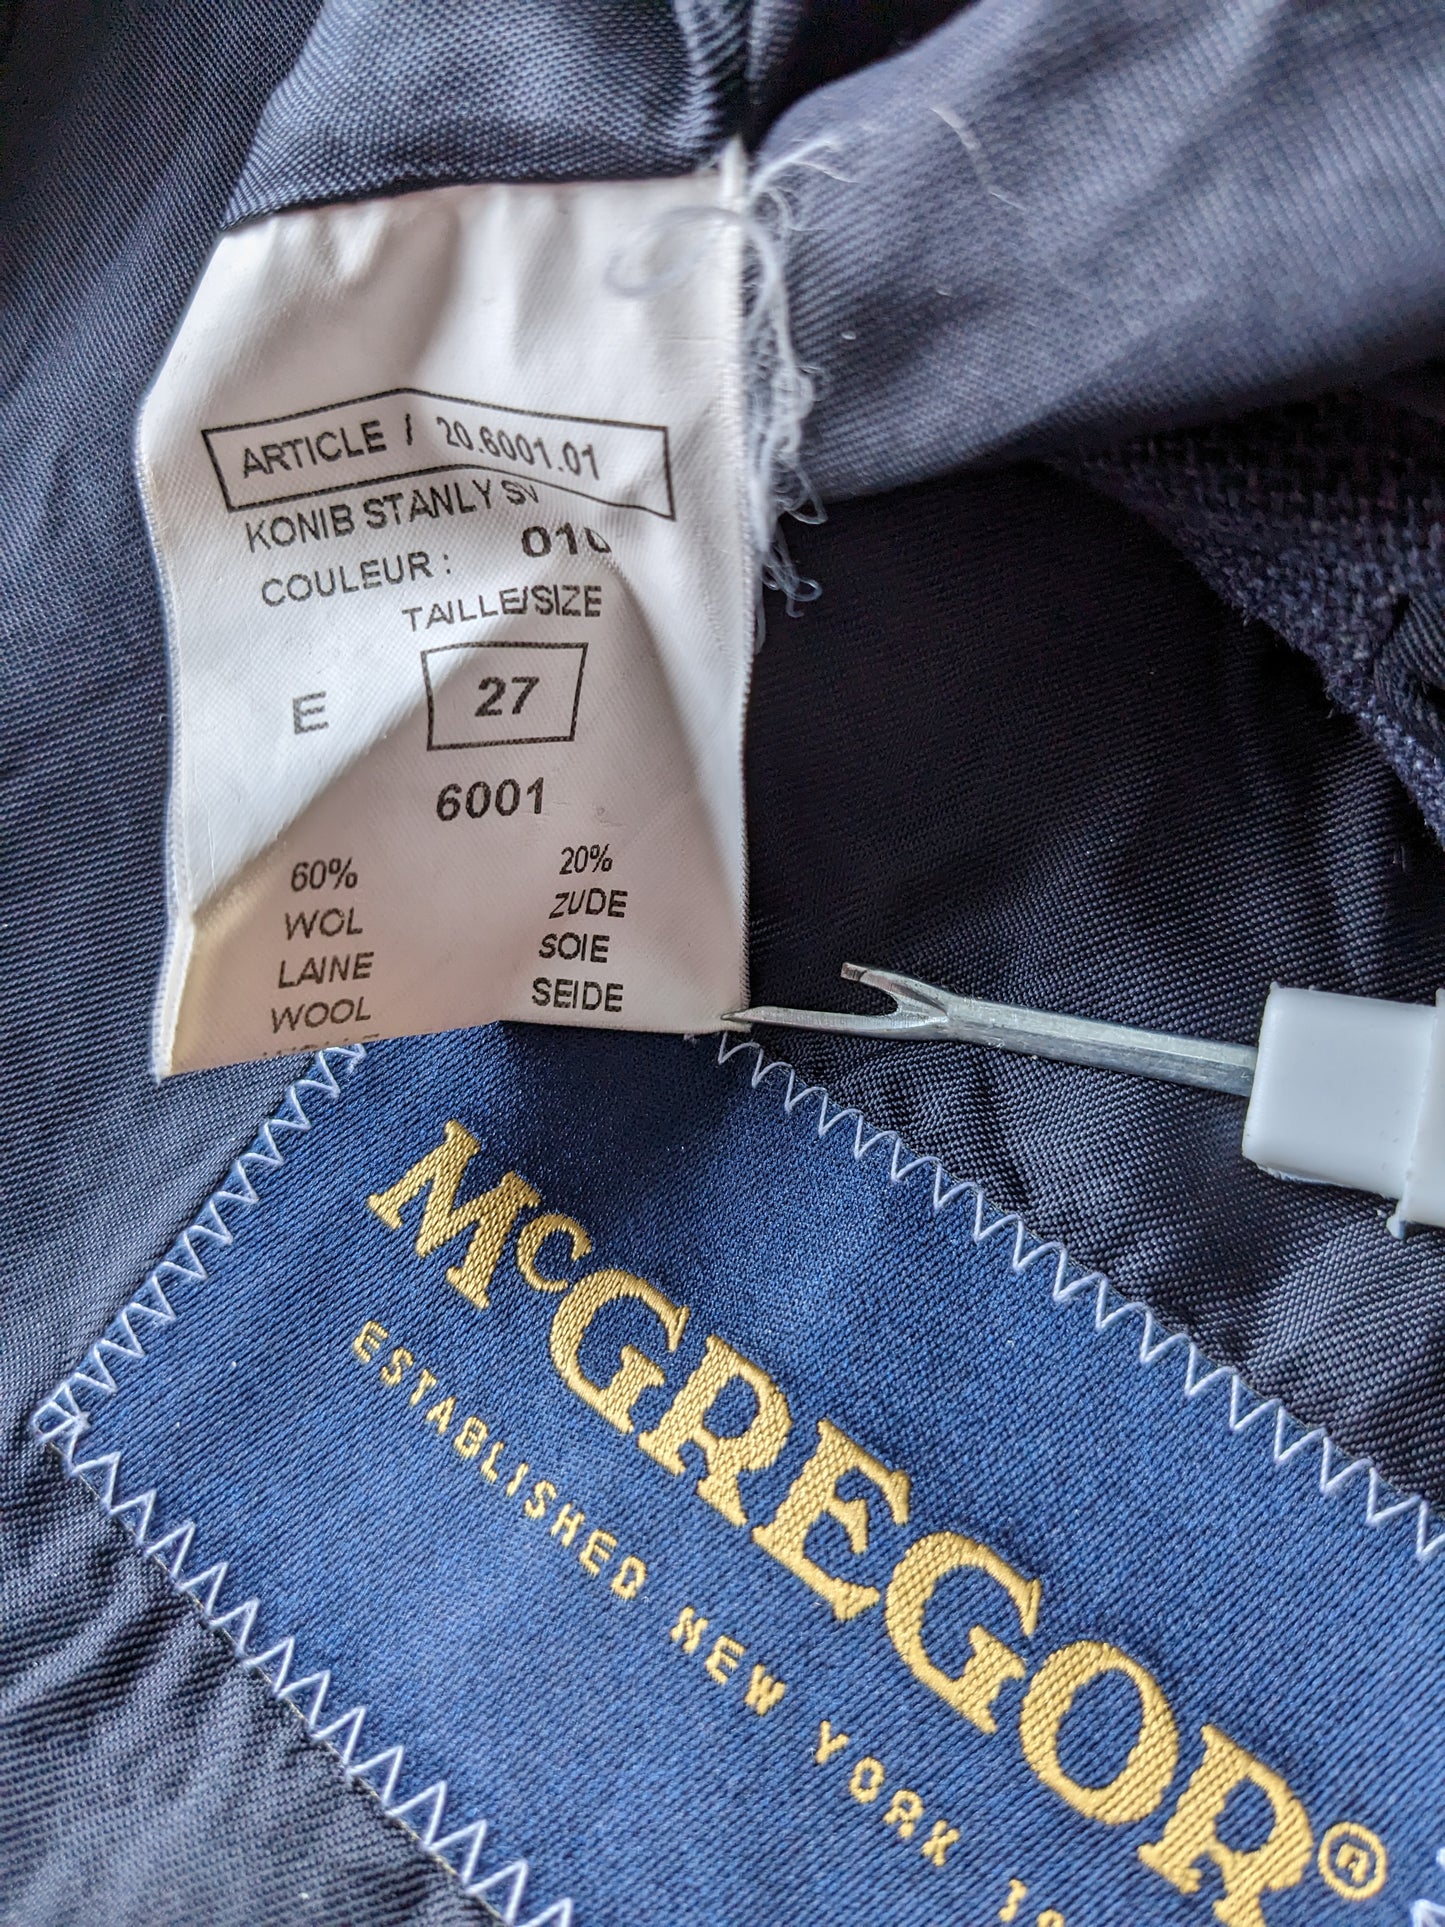 McGregor Wollseide Jacke. Blau schwarz gemischt. Größe 27 (54 / l).